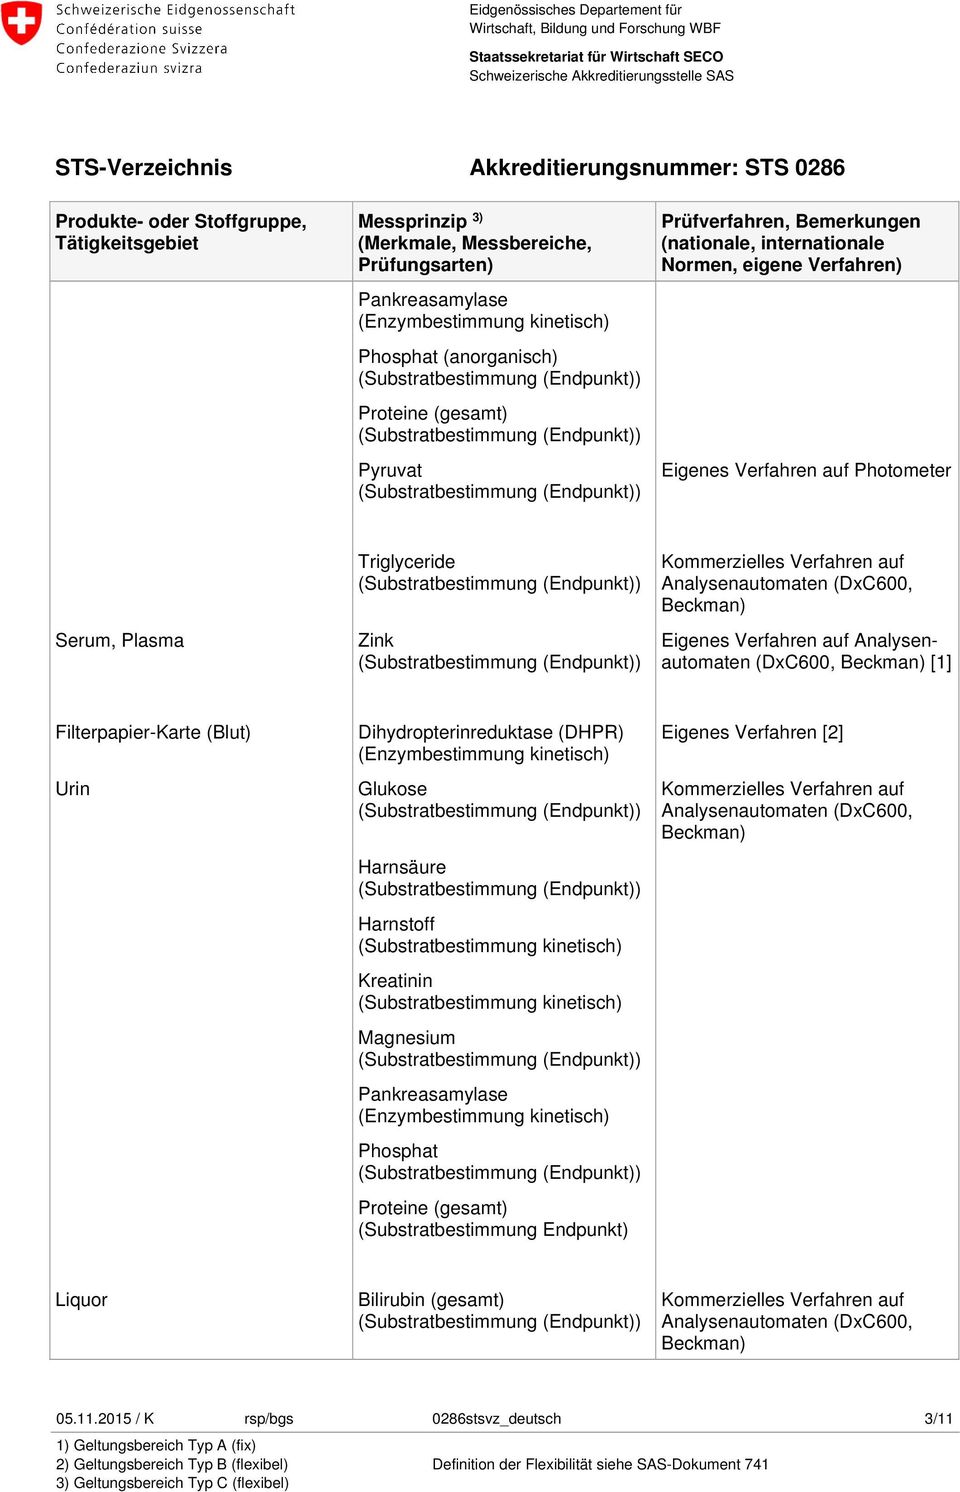 Harnstoff (Substratbestimmung kinetisch) Kreatinin (Substratbestimmung kinetisch) Magnesium Pankreasamylase Phosphat Proteine